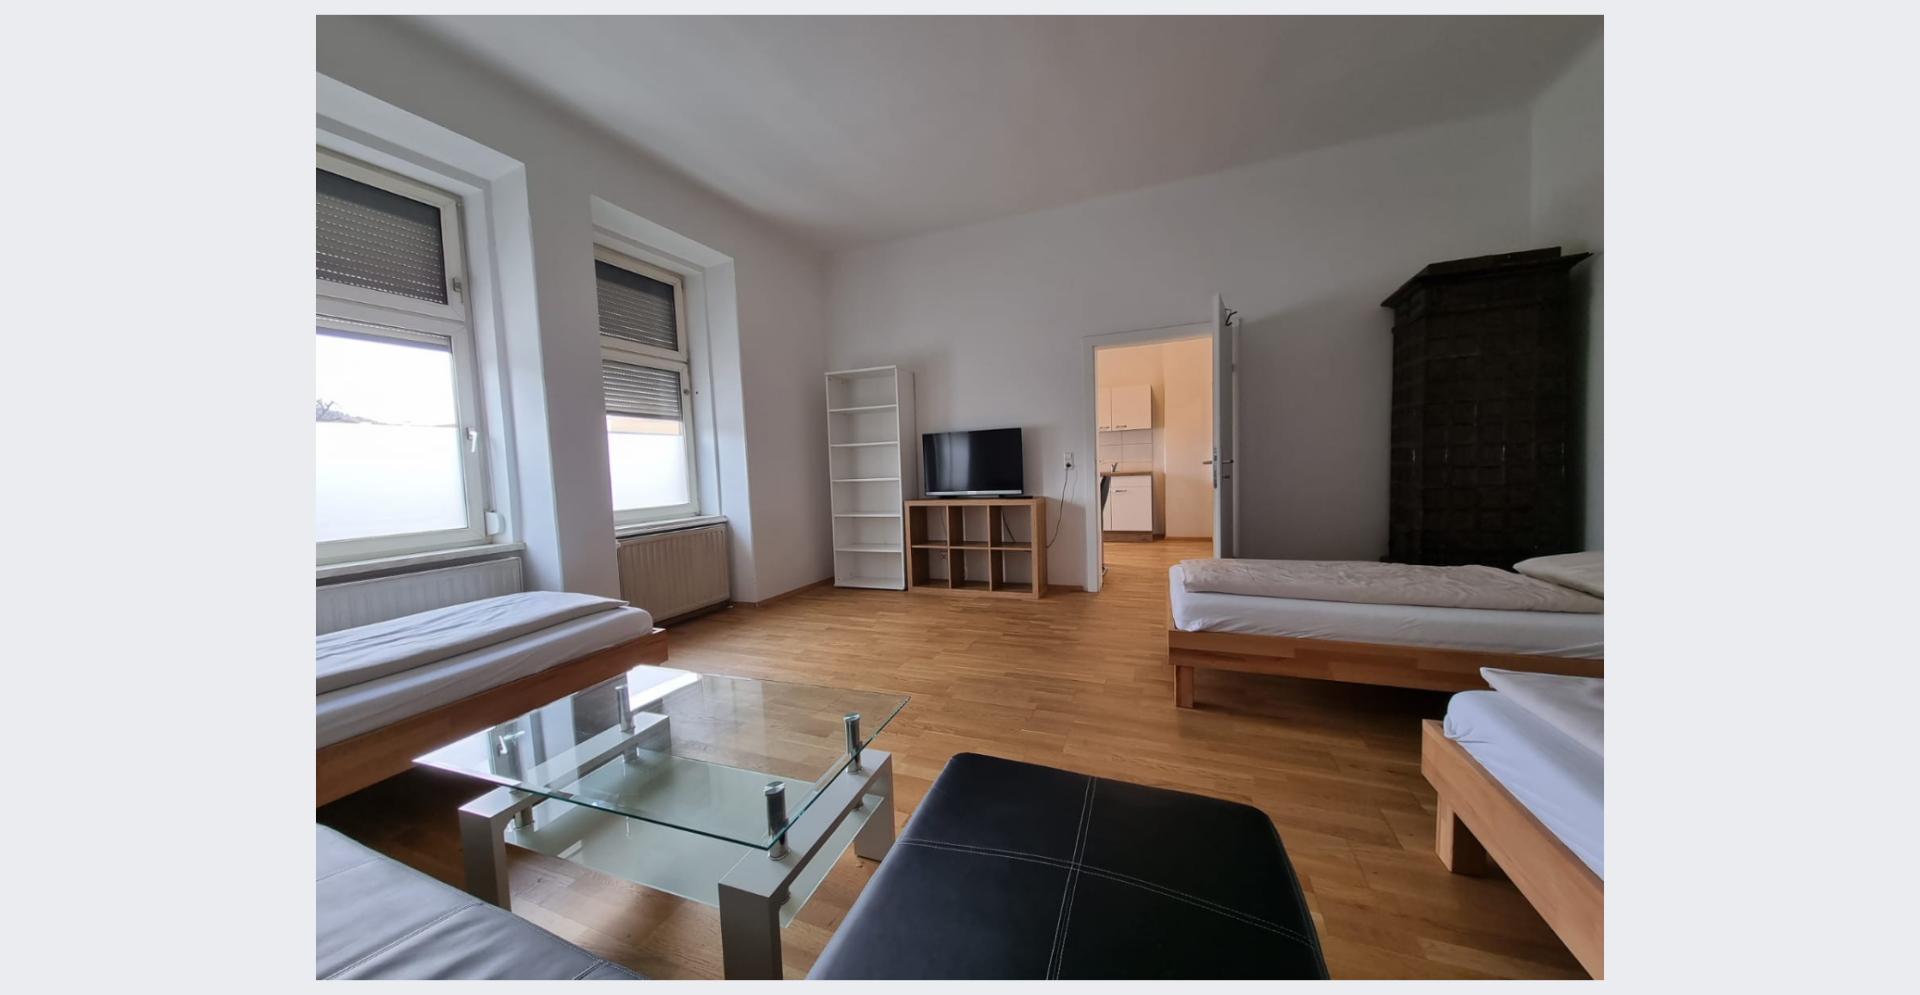 Apartmenthaus Worker's Apartments Leoben phase2 projekt GmbH, Frau Melanie Ploder 8700 Leitendorf 1700642387655dbe53d8207